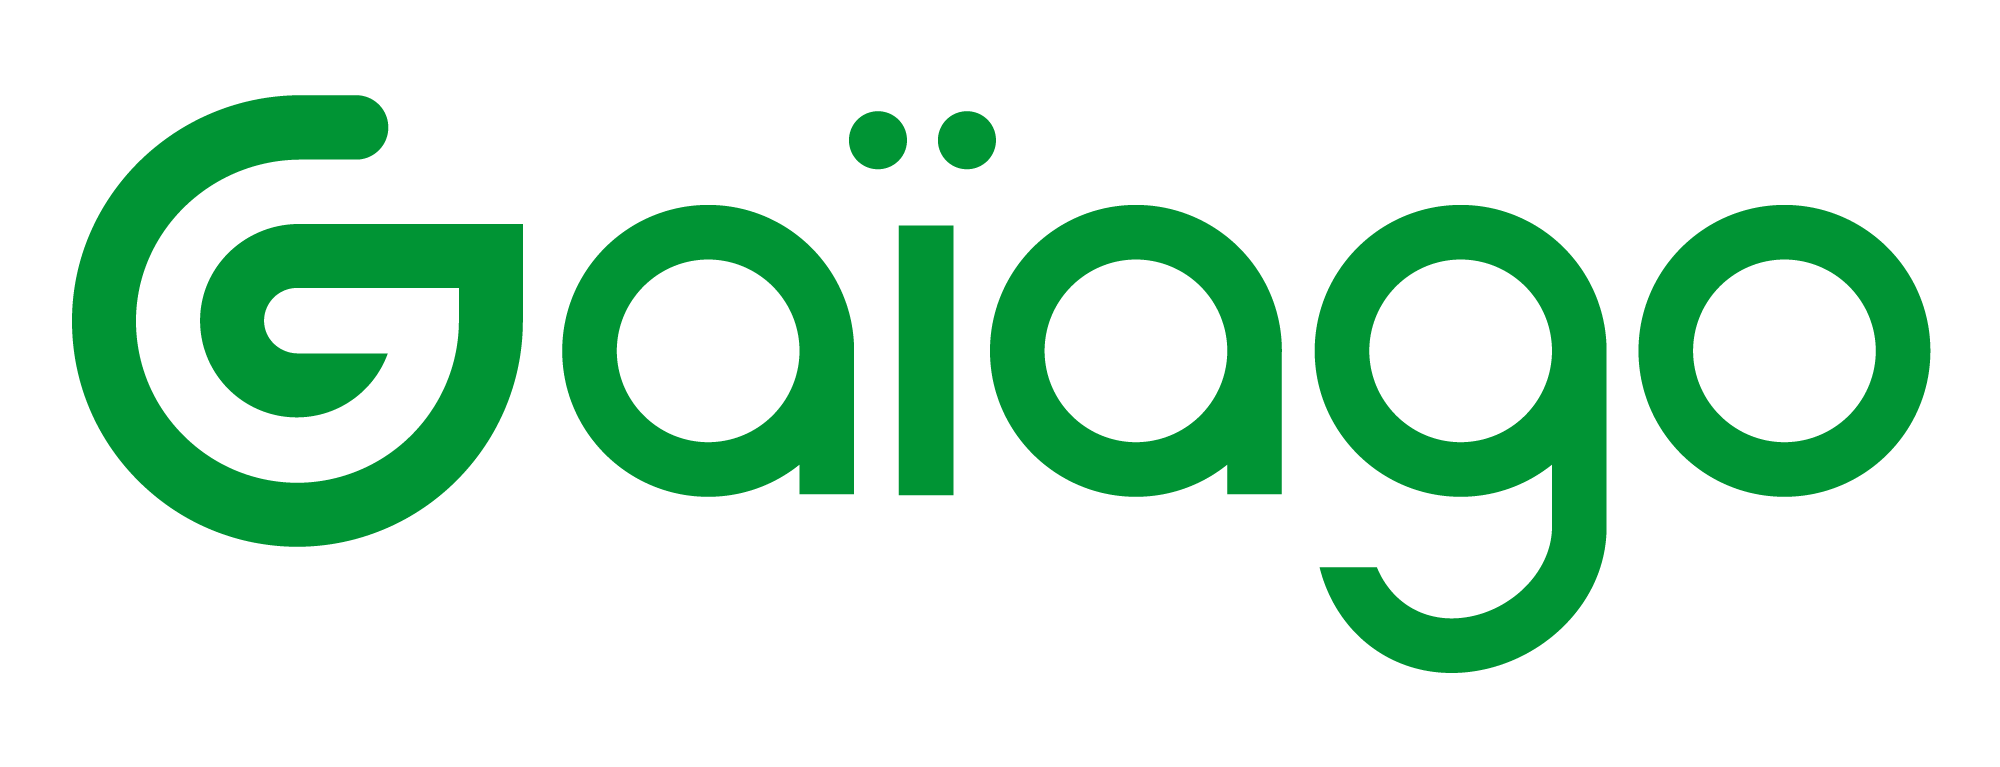 Gaiago_logo_vert